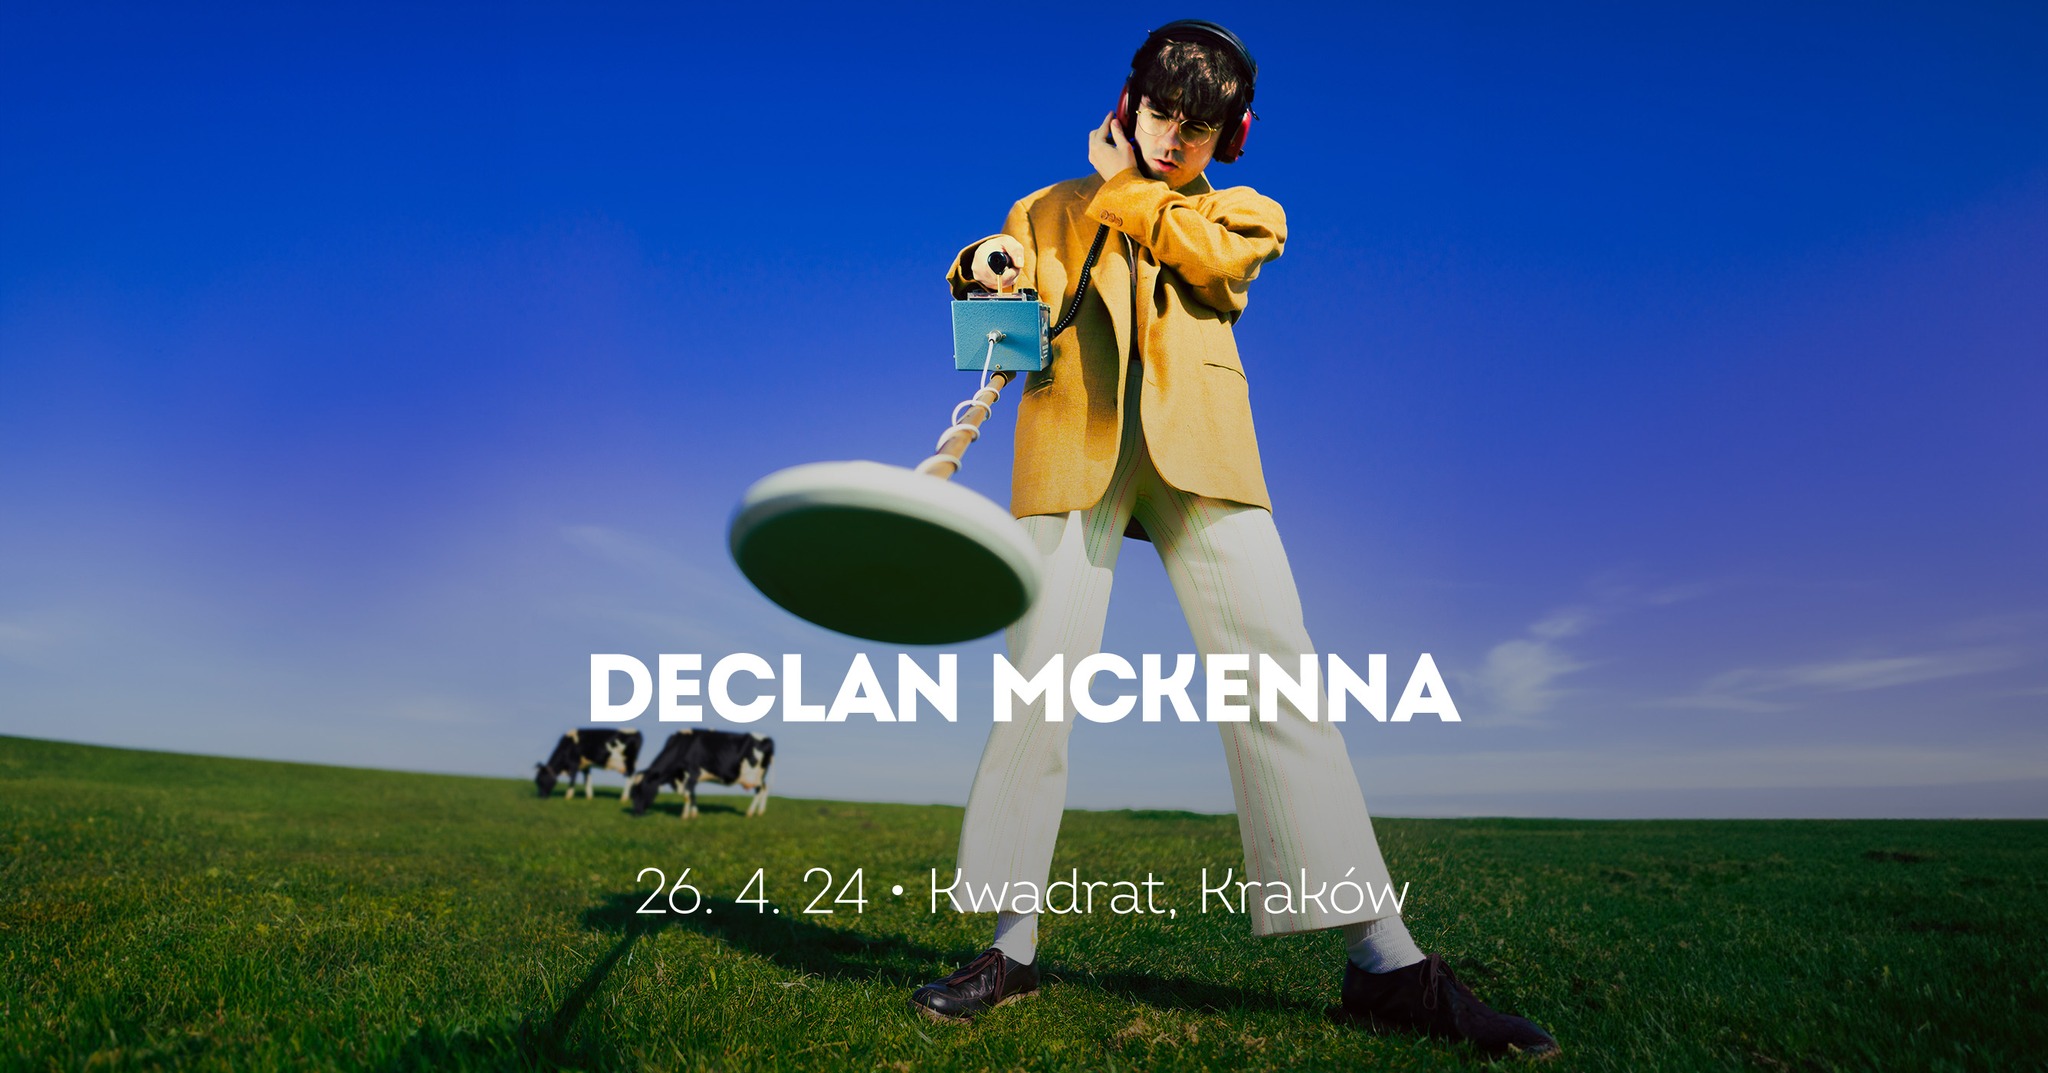 Declan McKenna